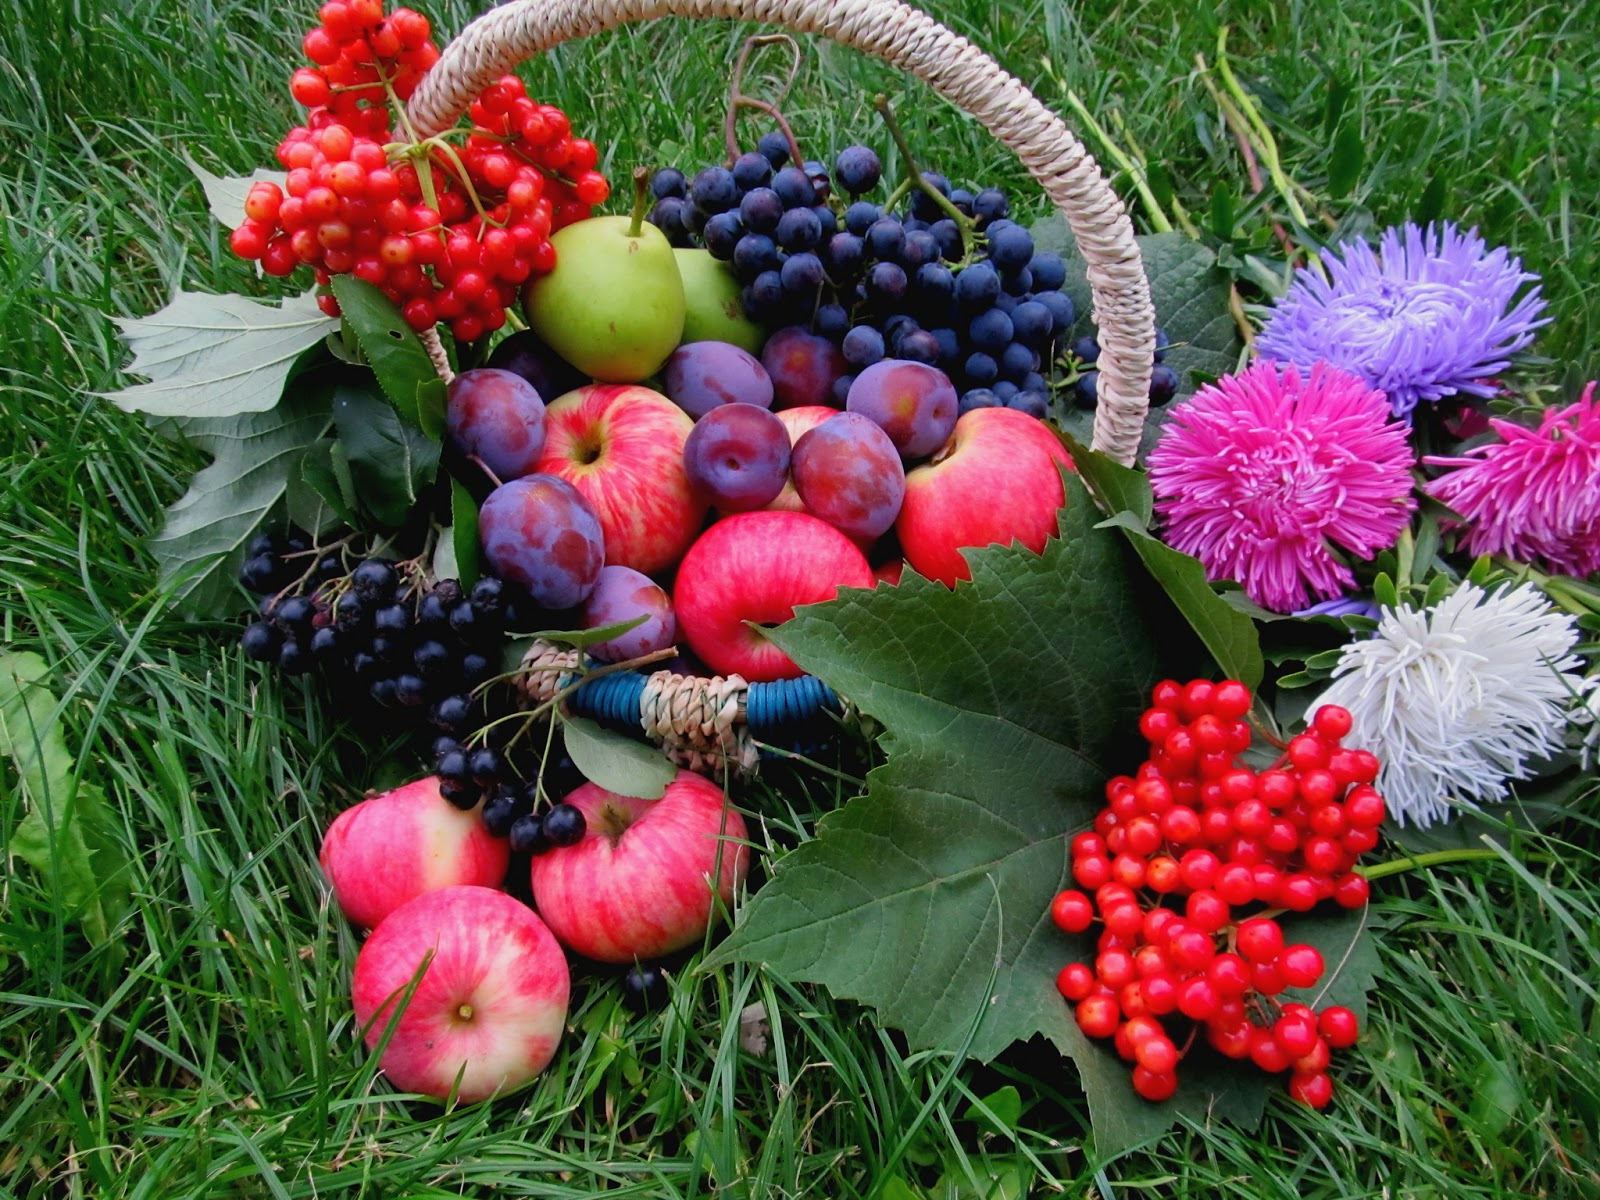 Ковид август. Август астры август звёзды август грозди винограда и рябины. Август природа. Осенние фрукты и ягоды. Осенние цветы в саду.